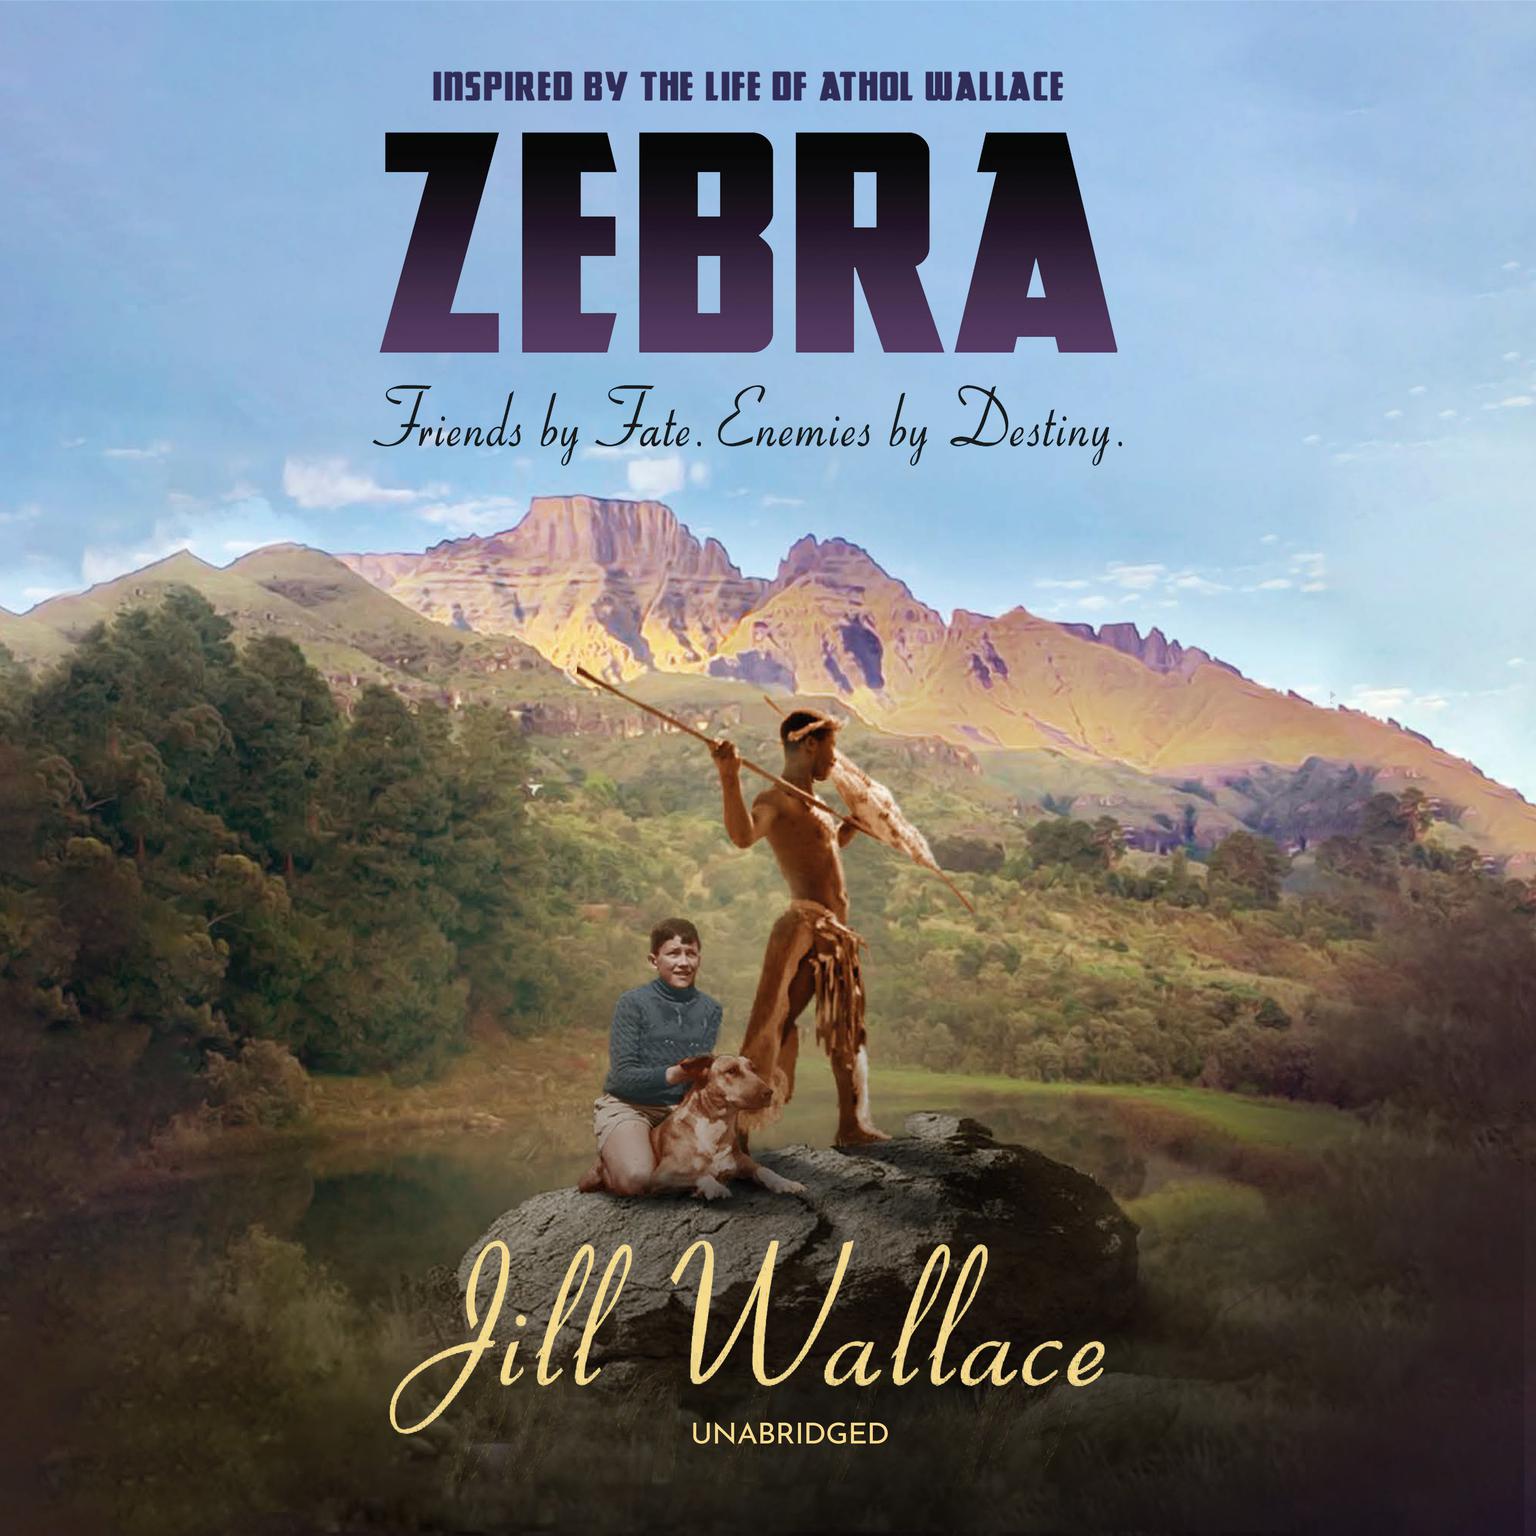 Zebra: Friends by Fate. Enemies by Destiny. Audiobook, by Jill Wallace